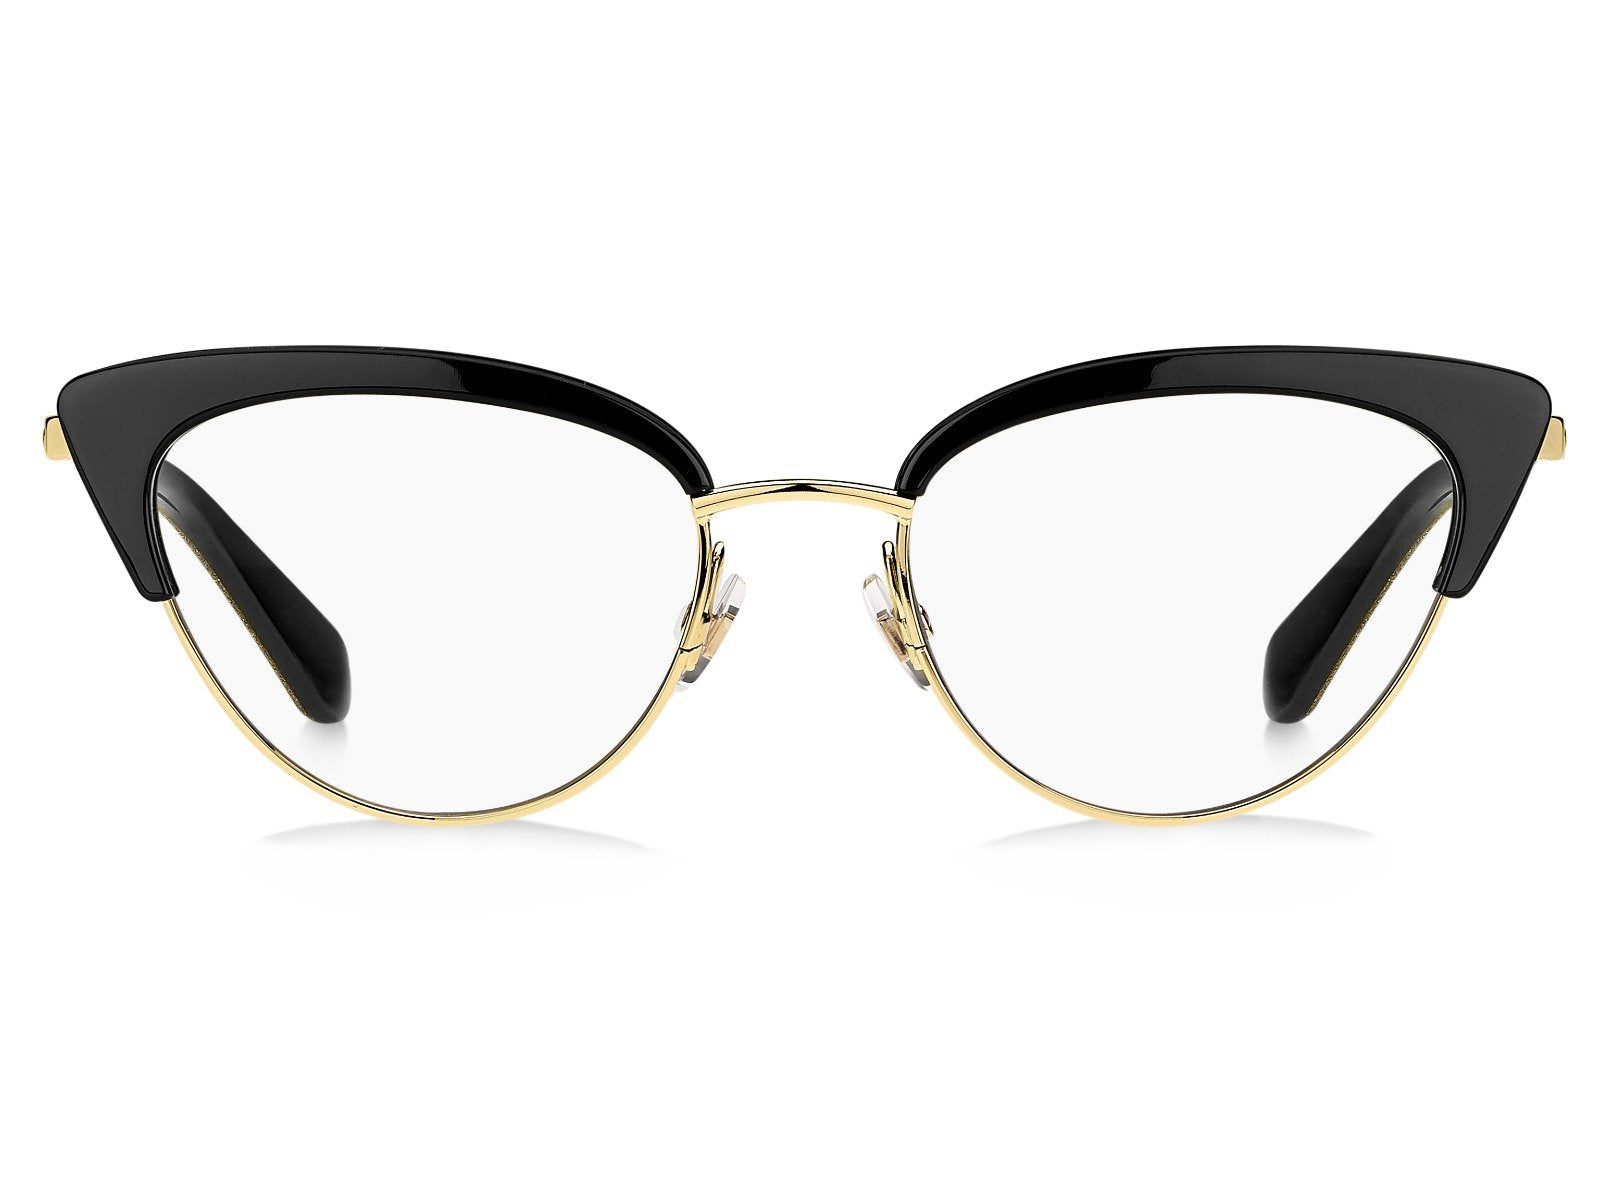 Kate Spade Jailyn Cat Eye Glasses | Fashion Eyewear US